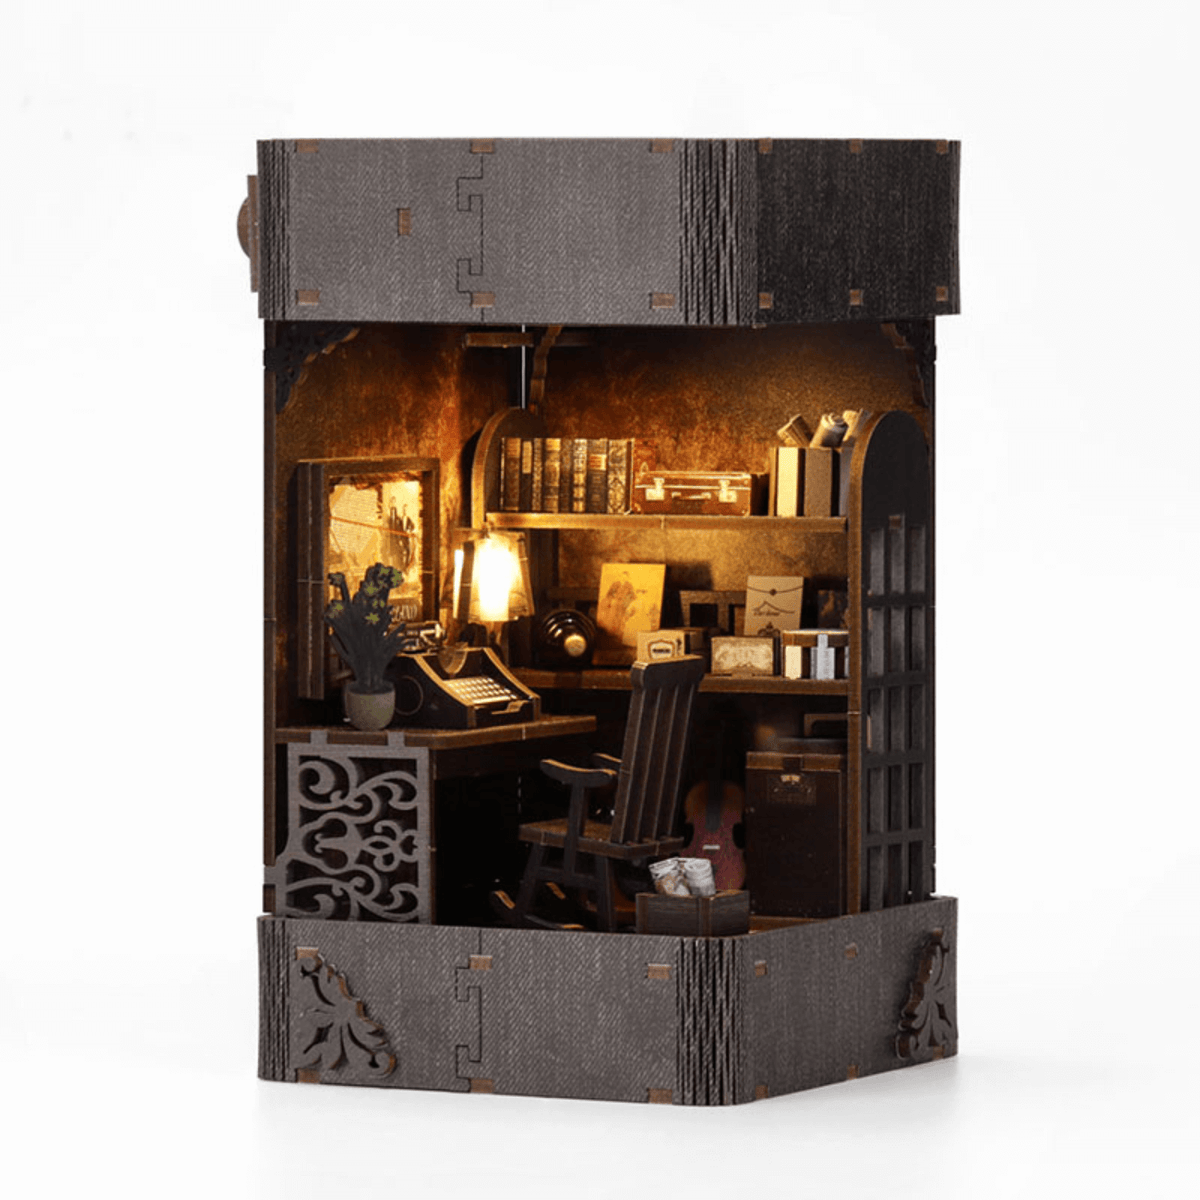 Maison de poupée en bois Japonaise | Book Nook France